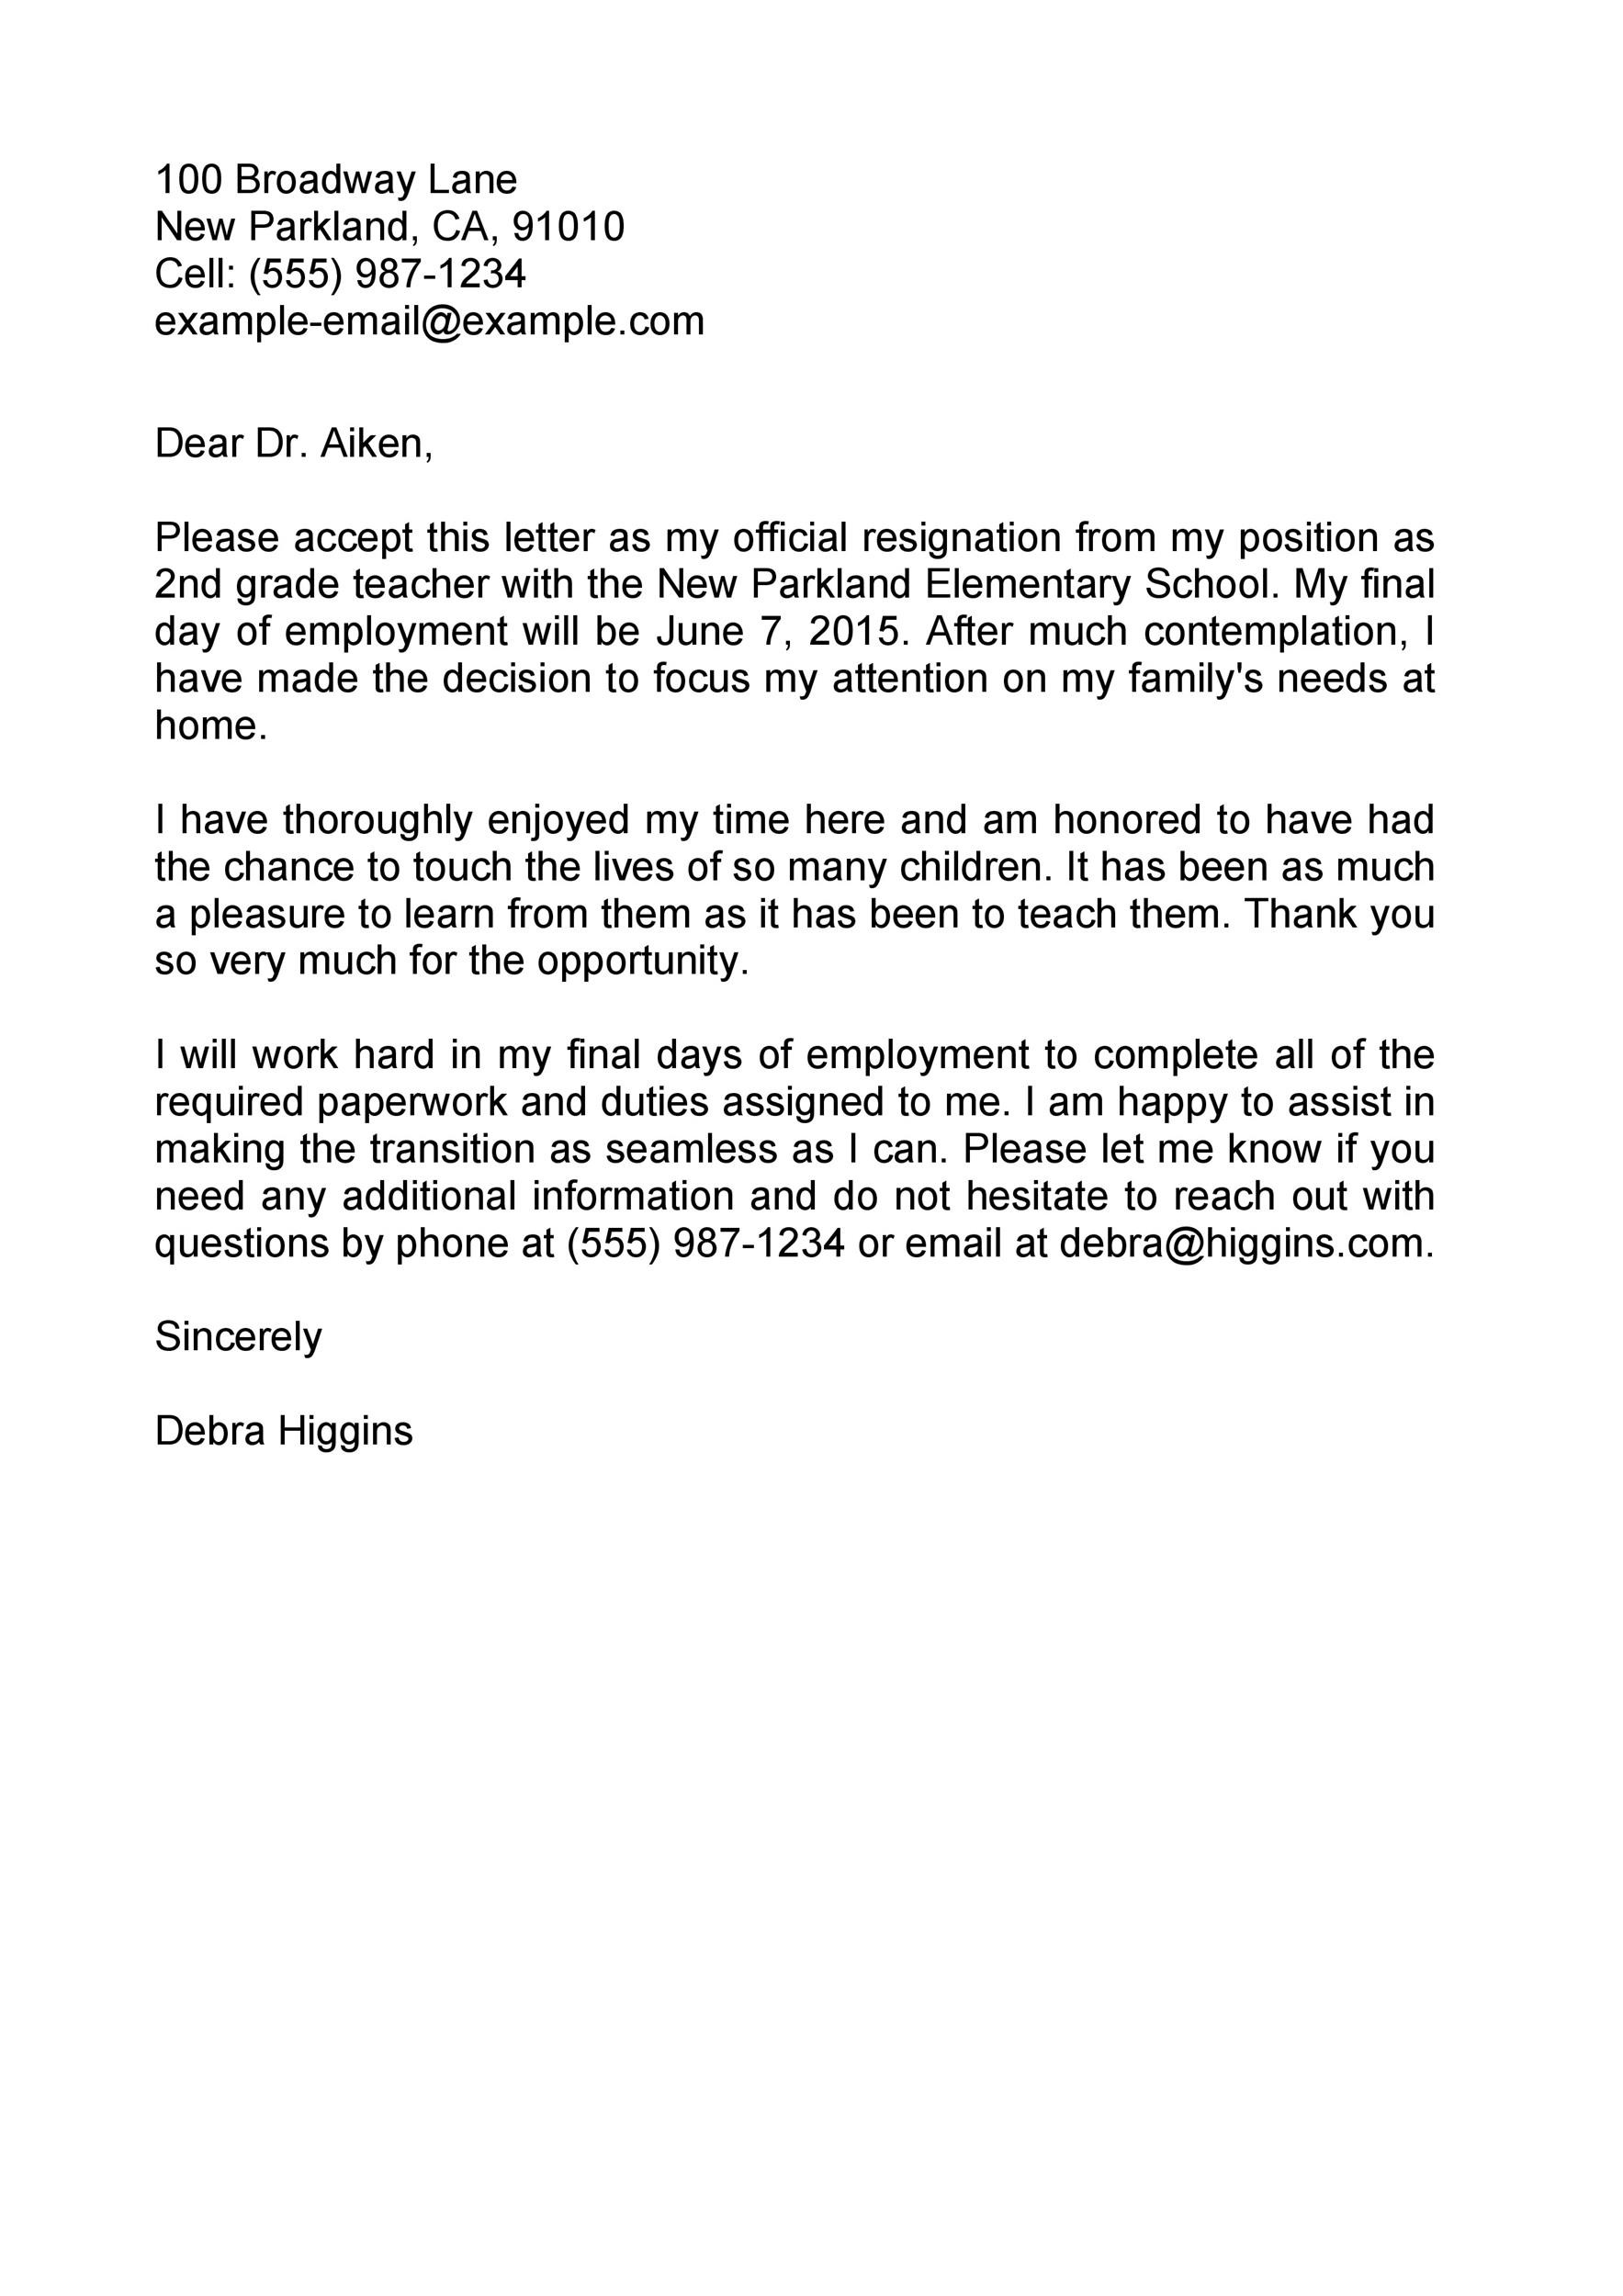 Sample Letter Of Resignation For Teachers